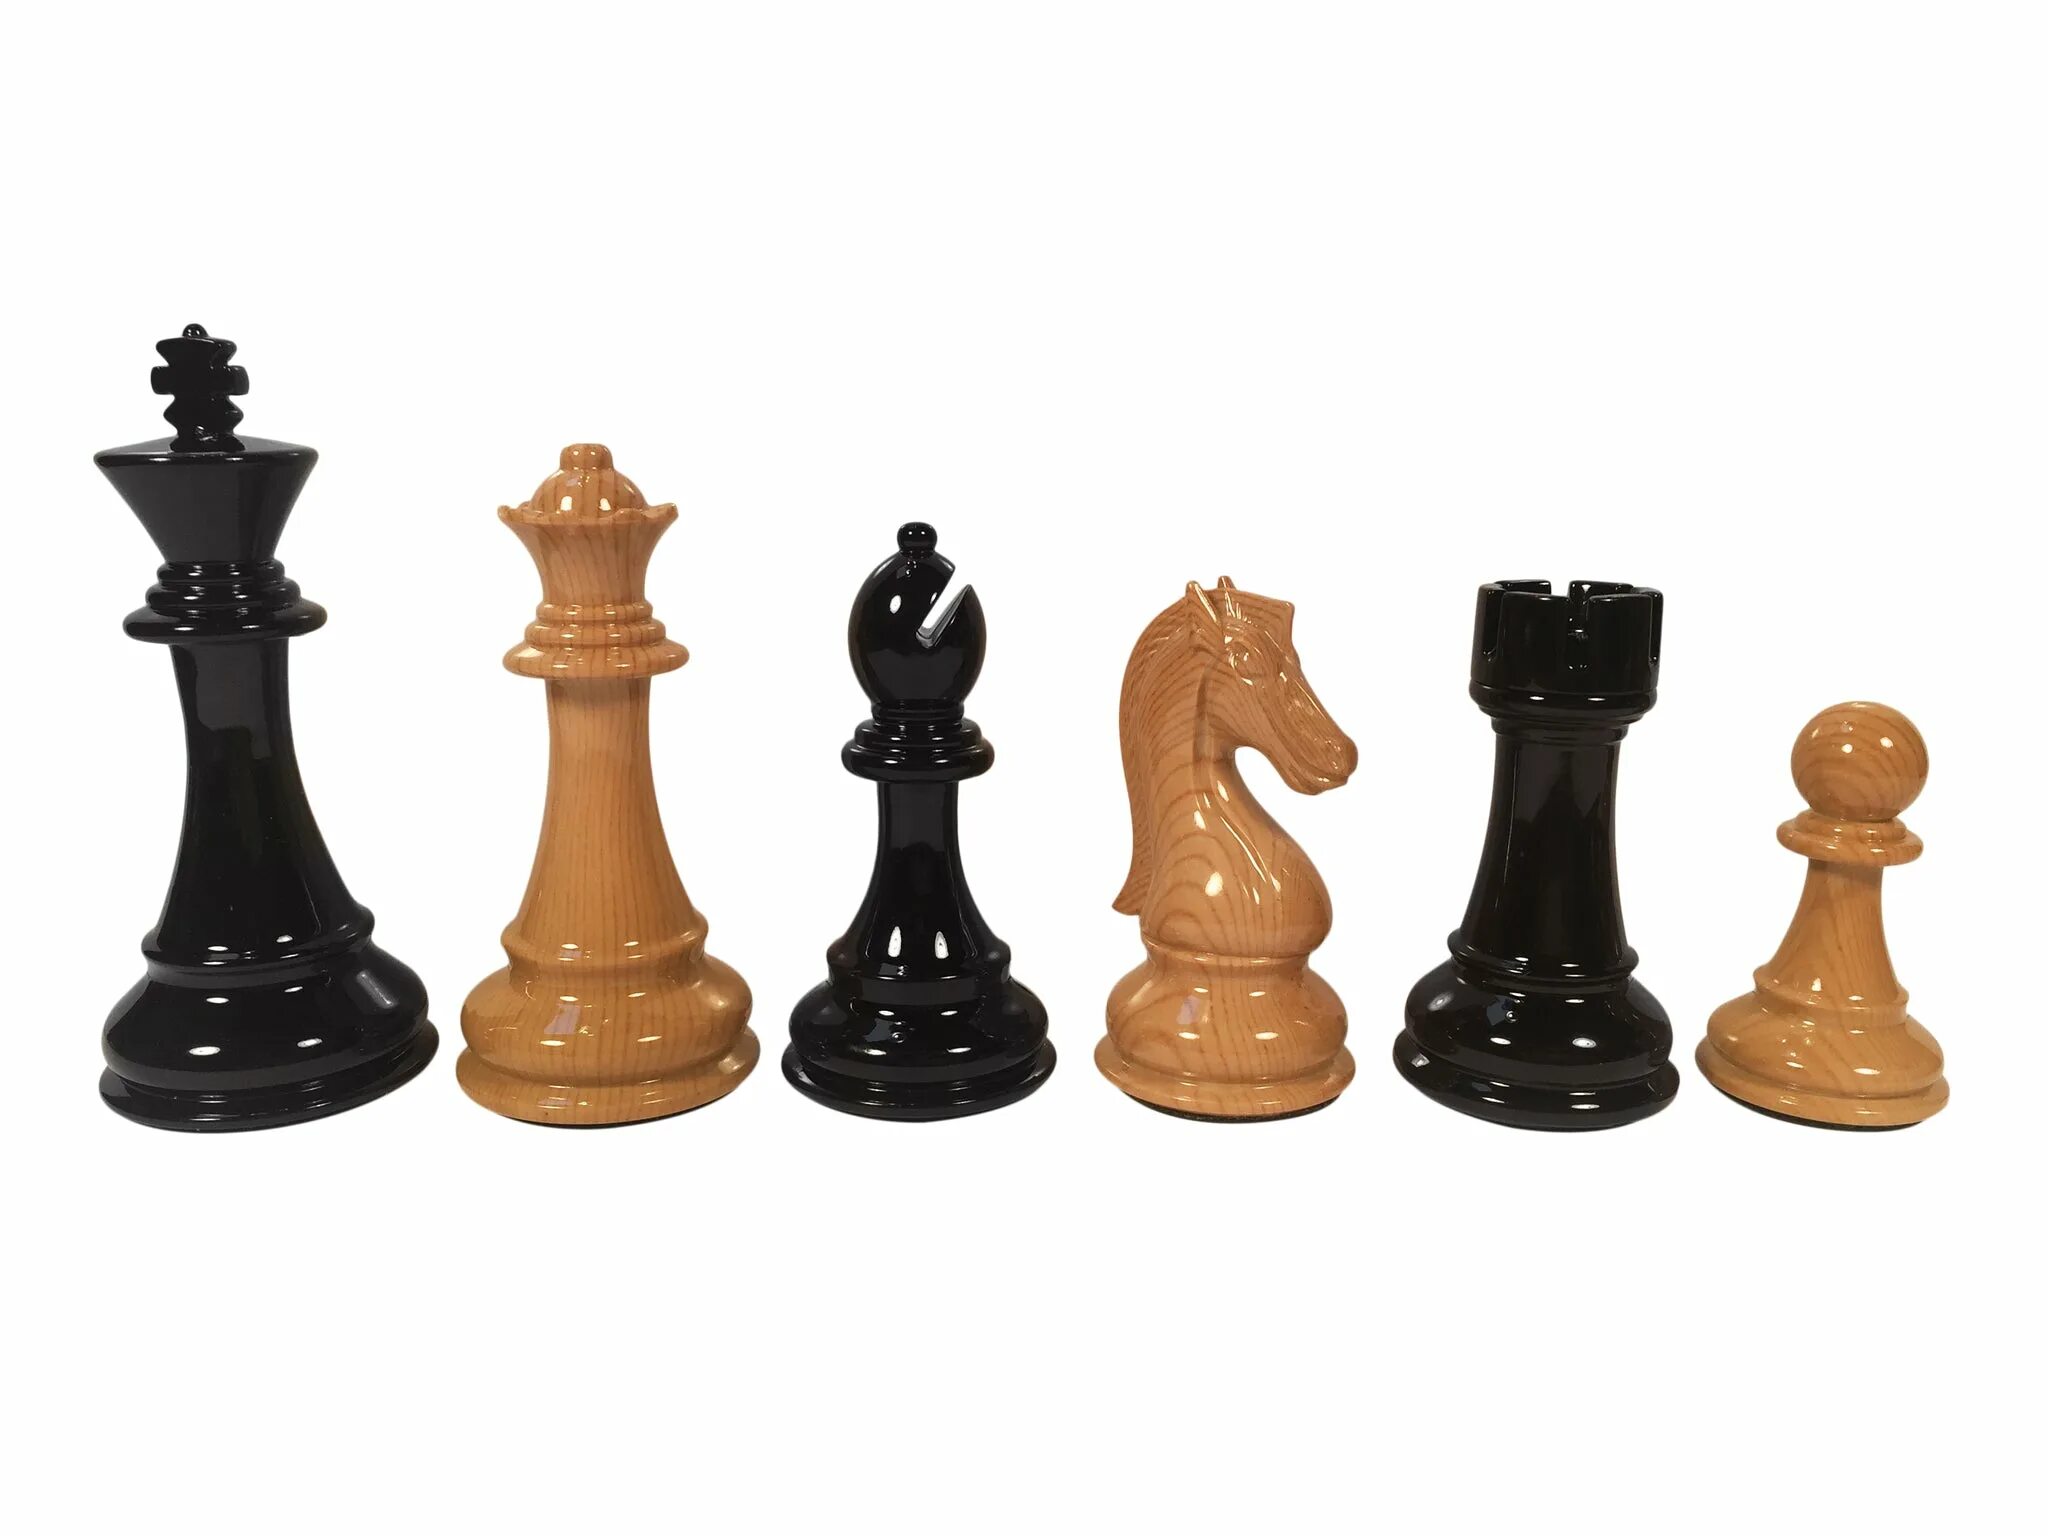 Шахматная фигура Король. Шахматный конь Стаунтон. Шахматная фигура короля в мантии. Шахматная фигура Король фото. Кингчесс